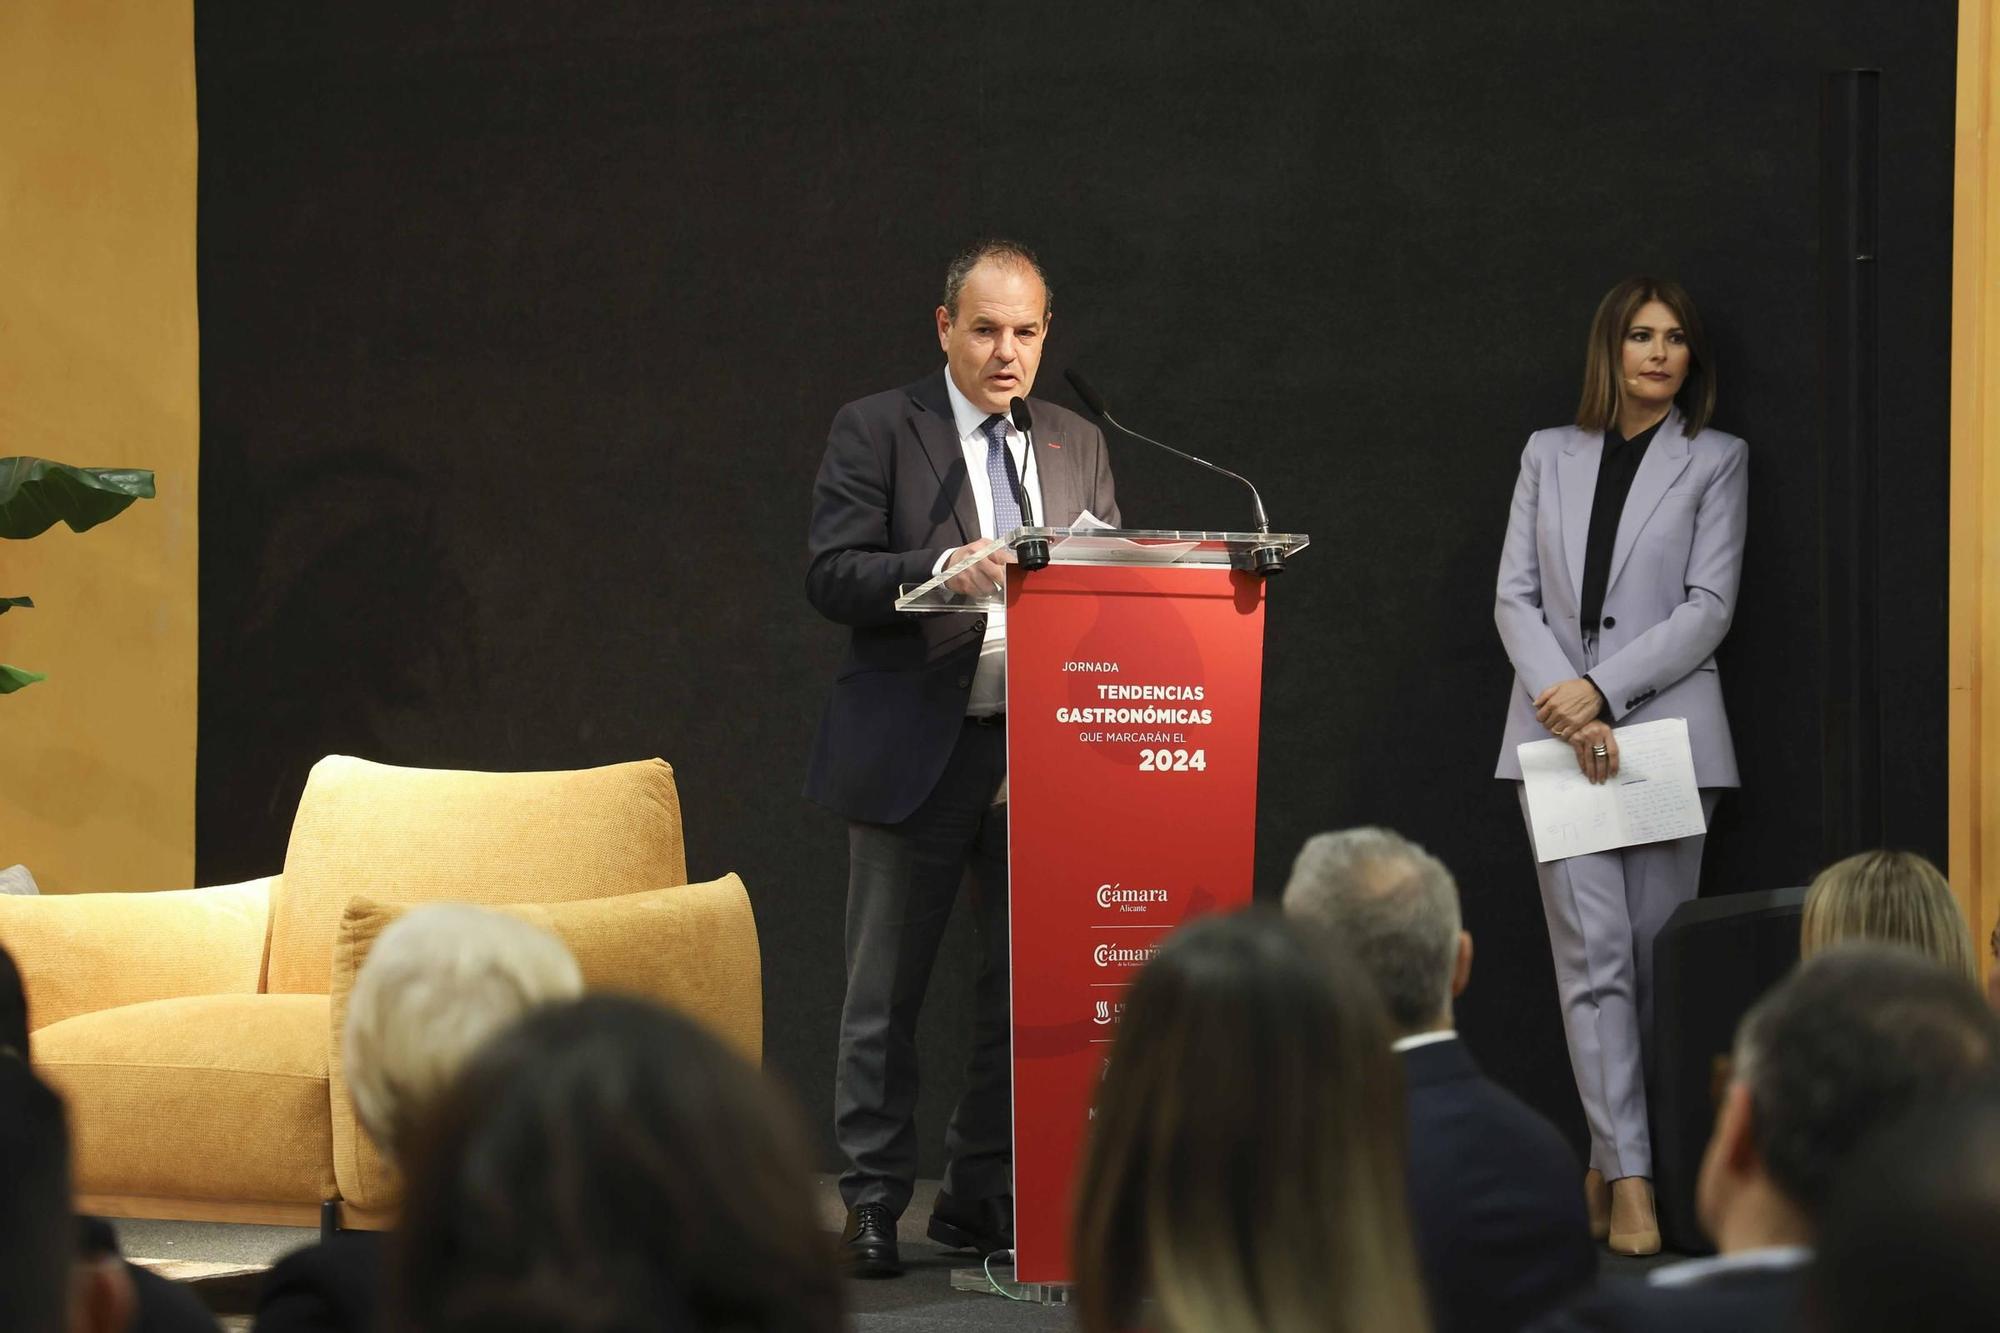 Pepe Rodríguez, Susi Díaz y Ricard Camarena presentan las tendencias gastronómicas que marcarán este 2024